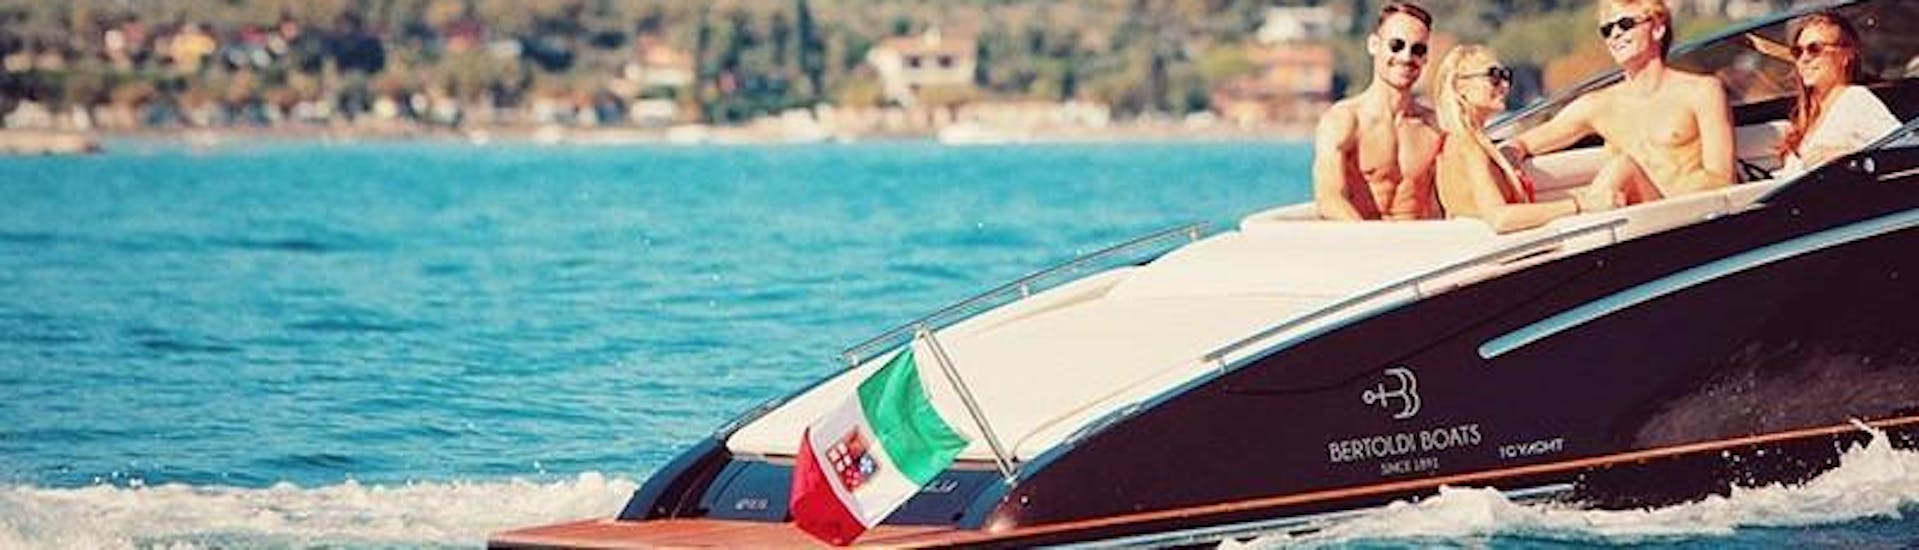 Gita in barca privata sul Lago di Garda da Sirmione.